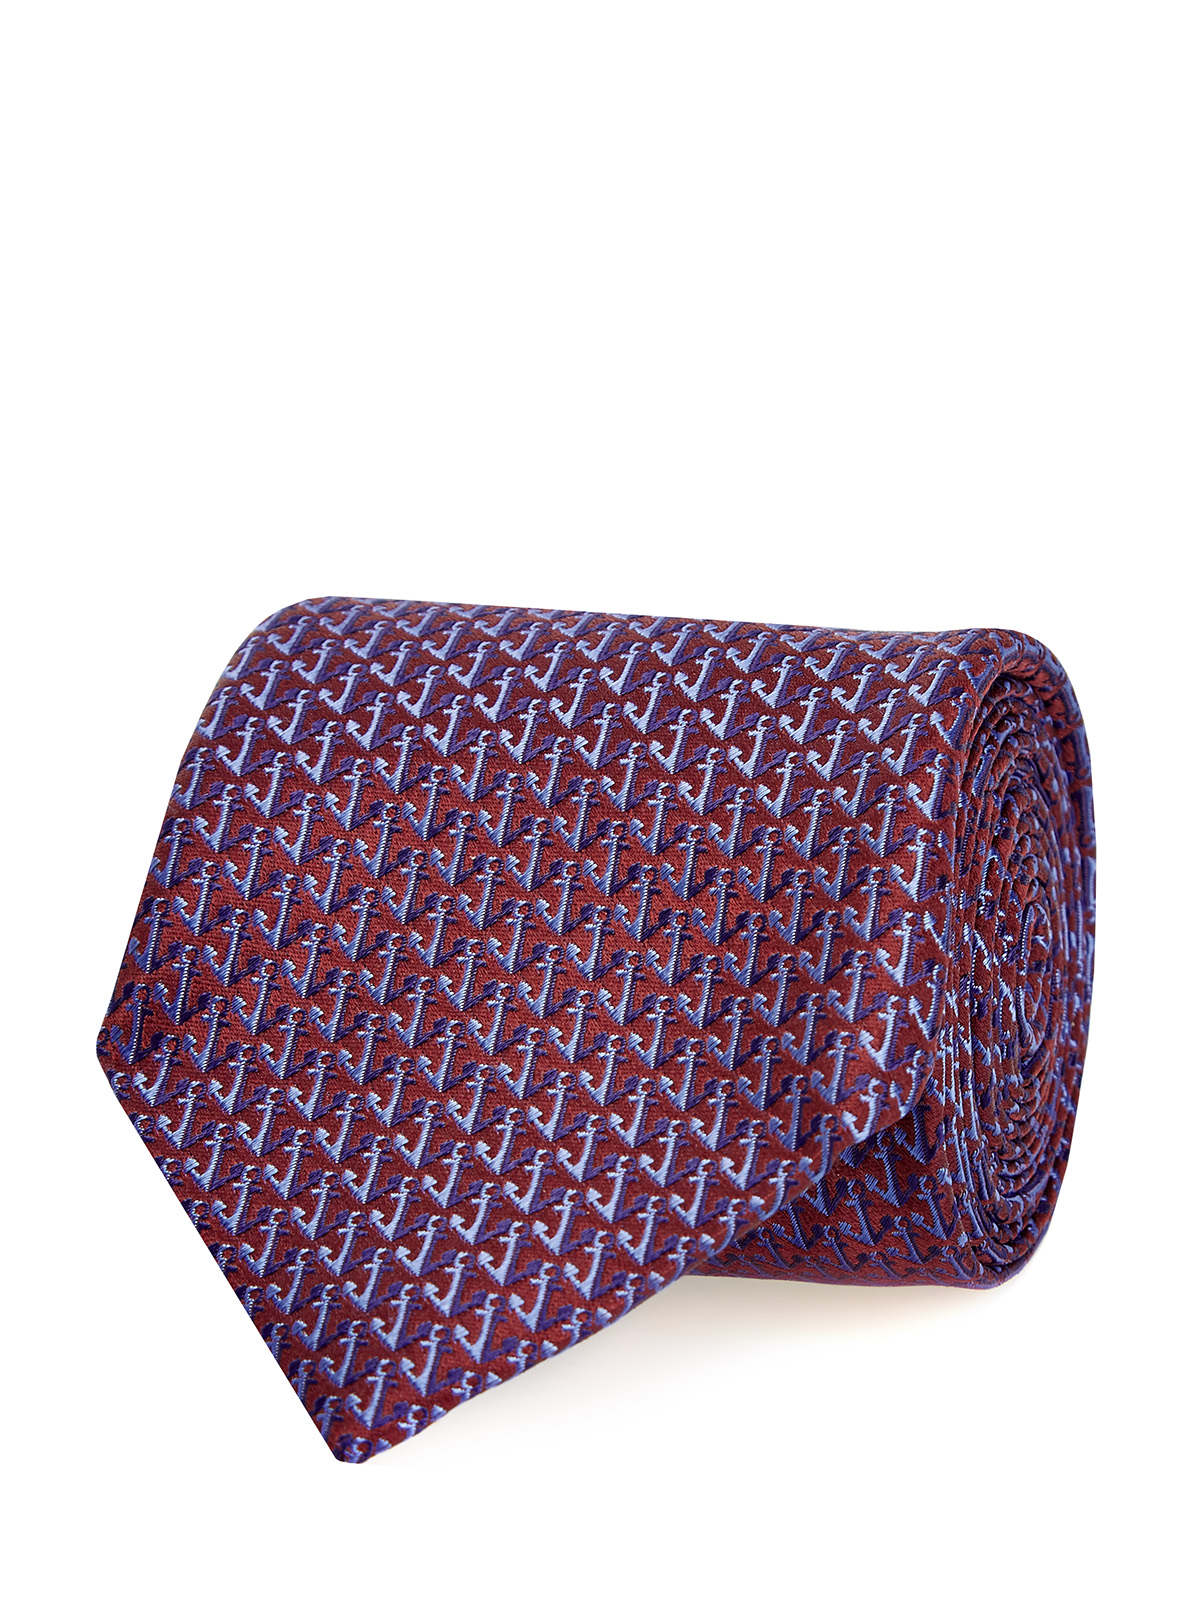 Шелковый галстук ручной работы с жаккардовым принтом CANALI, цвет фиолетовый, размер 40.5;41;42;42.5;43;43.5;44